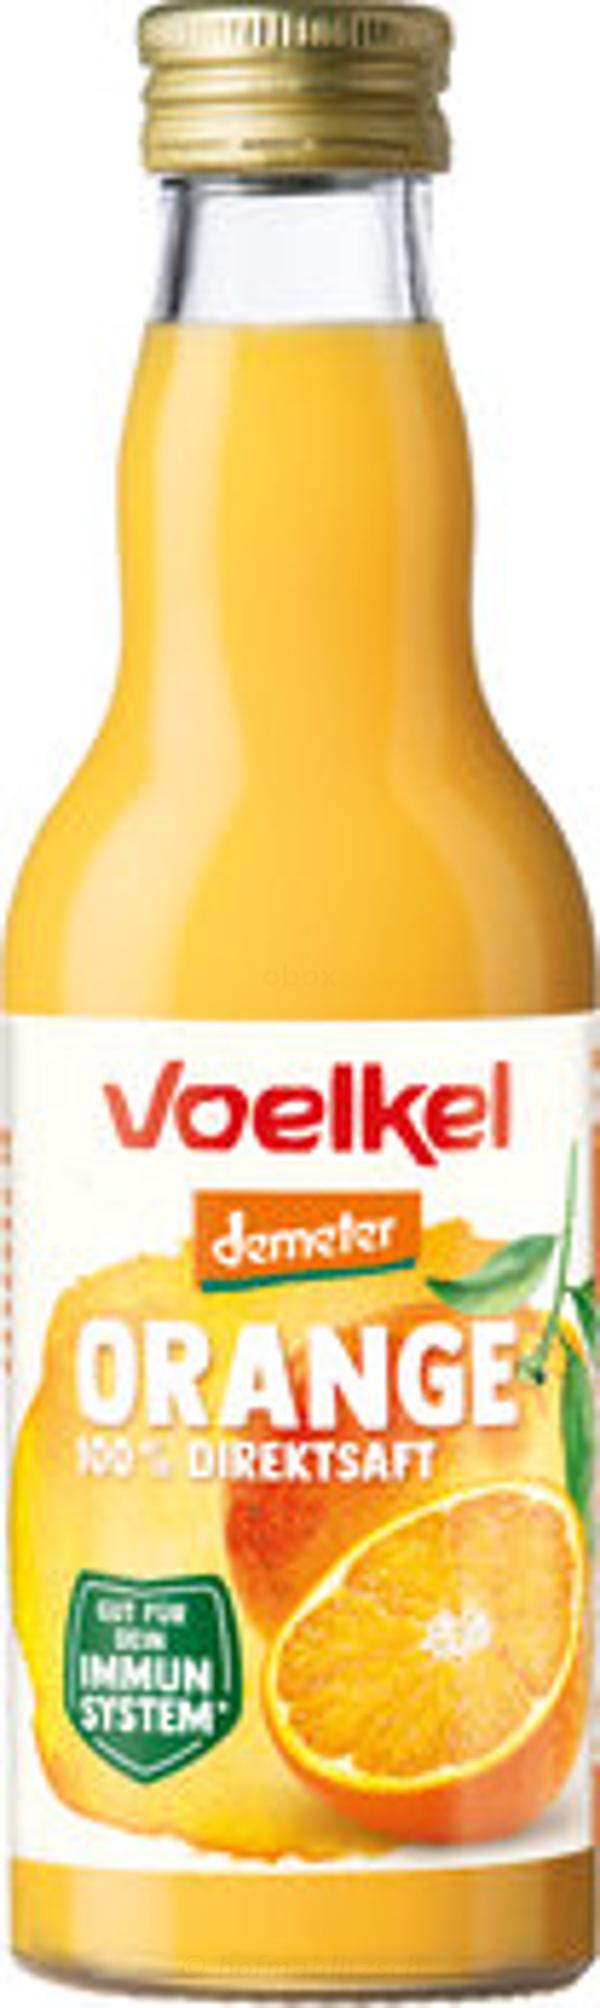 Produktfoto zu Orangensaft Demeter